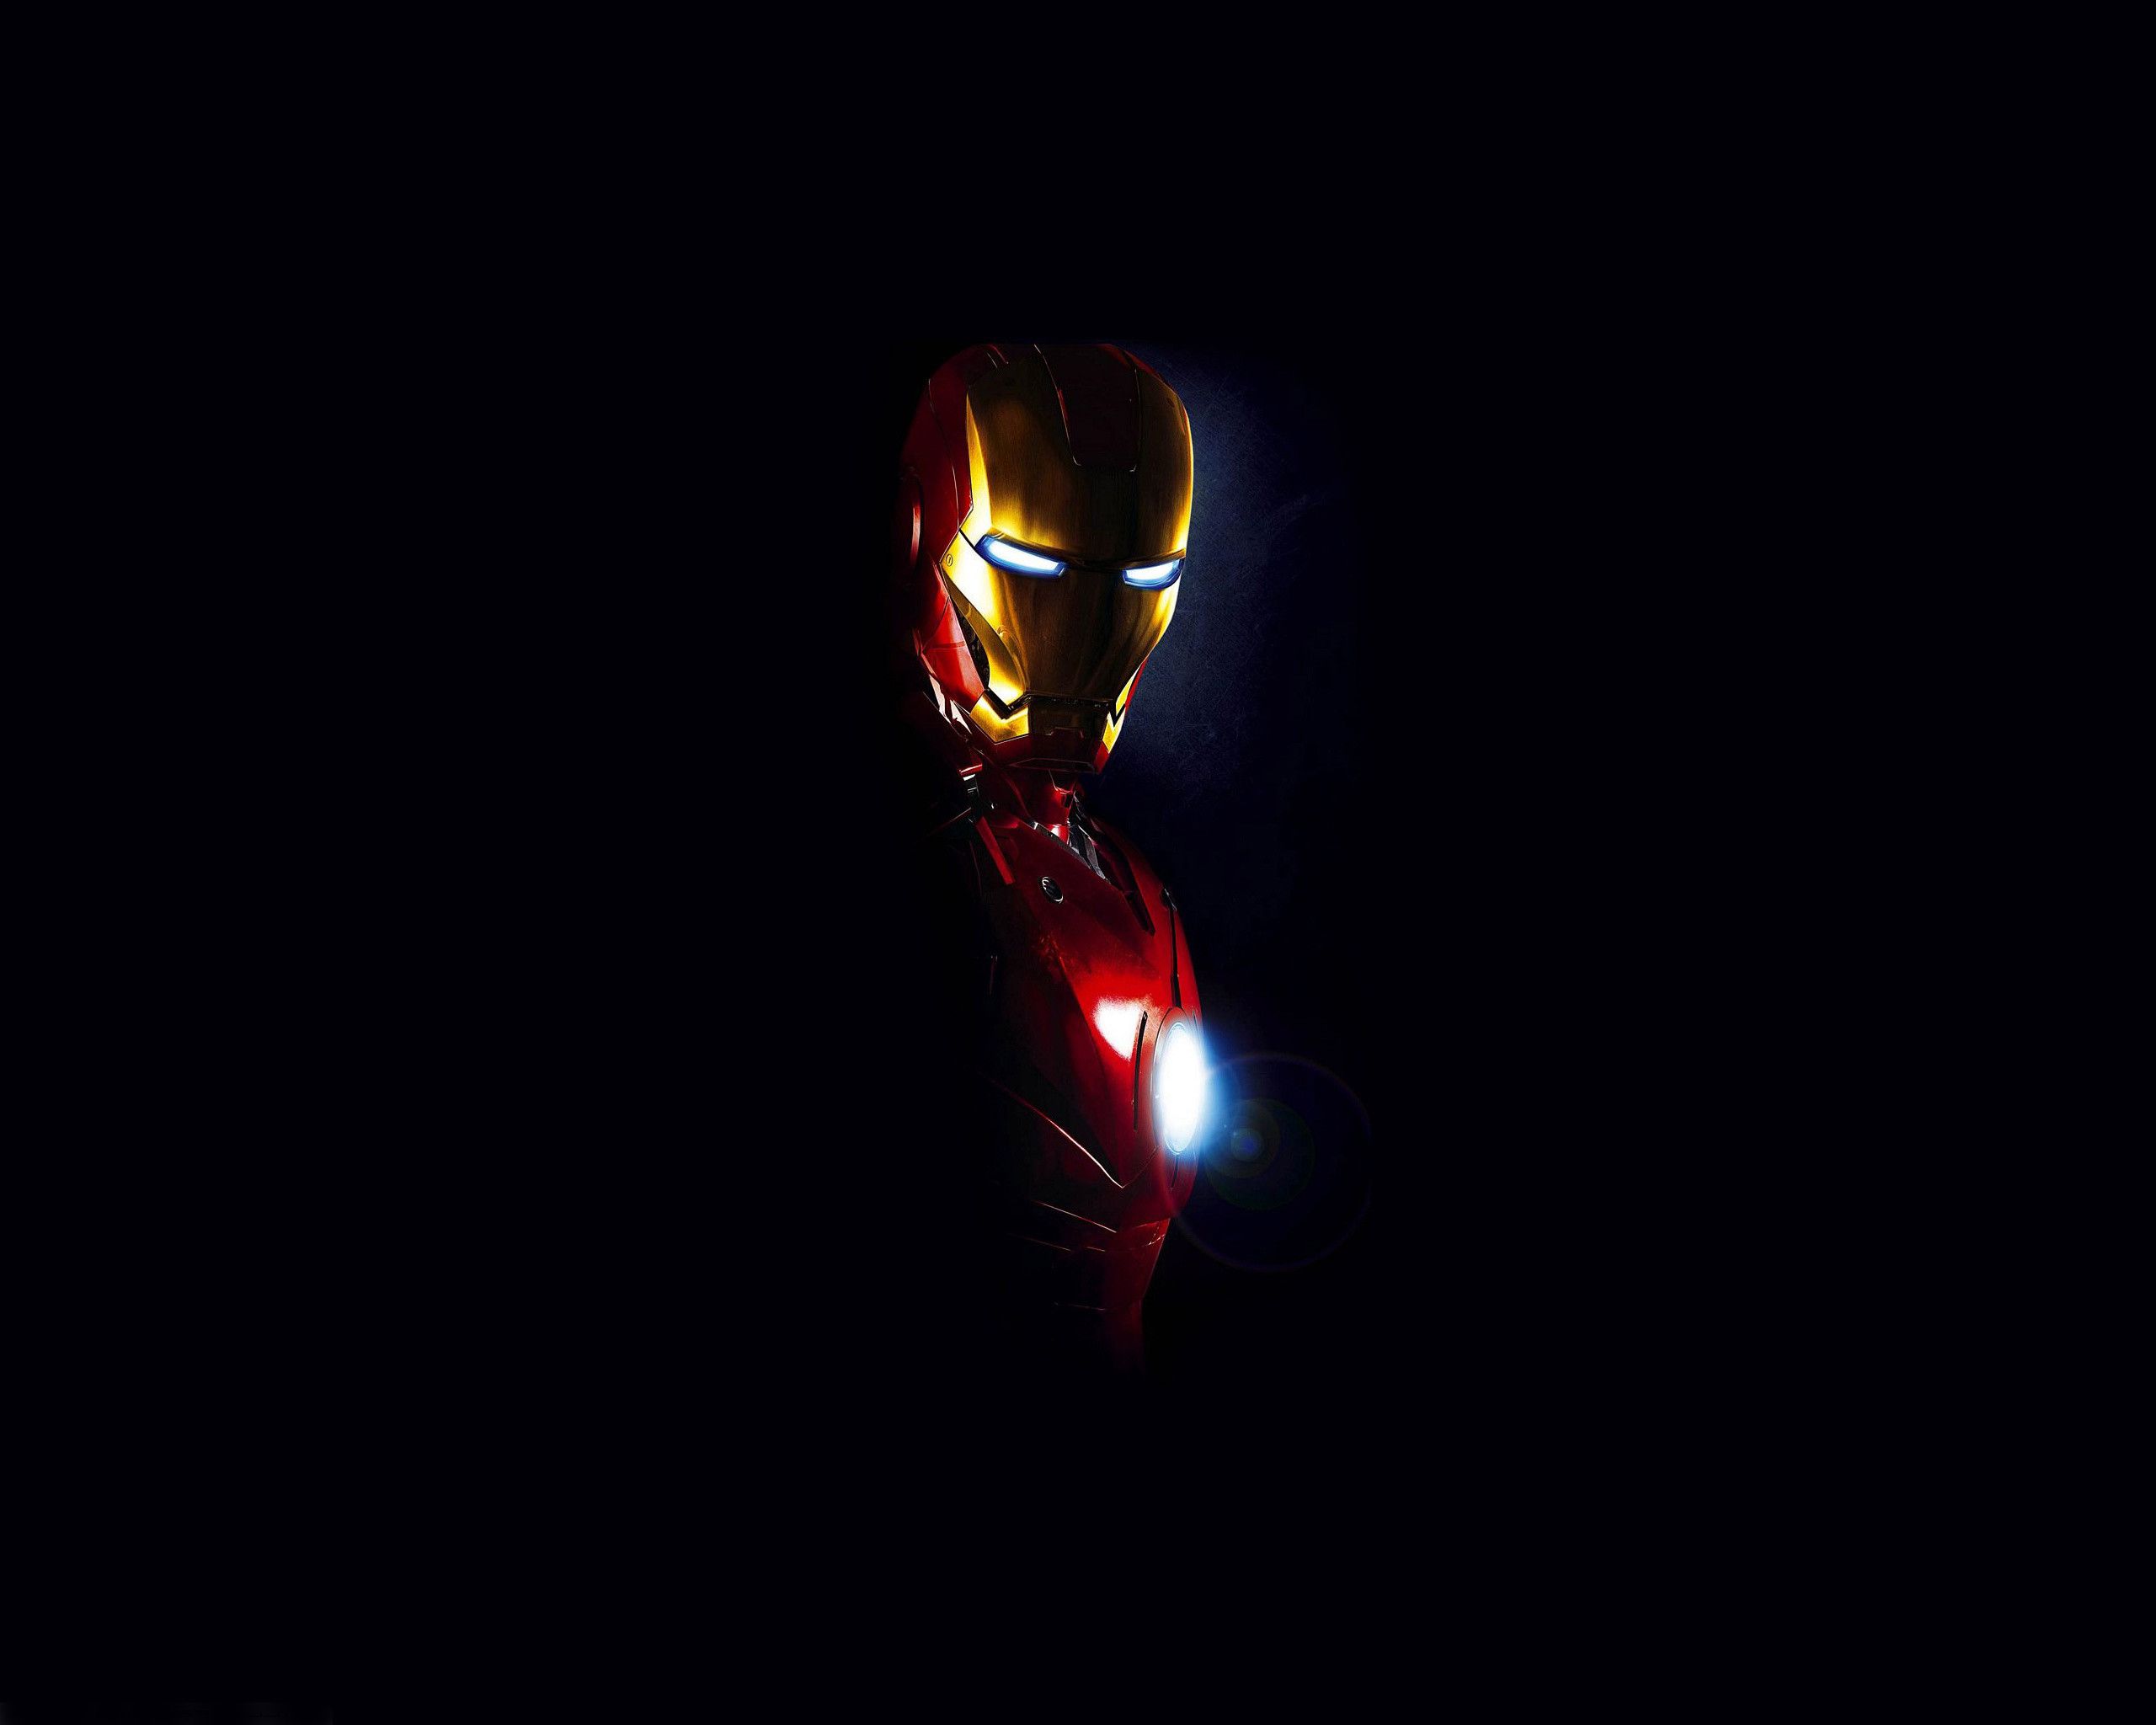 Salvapantallas y fondo de pantalla de Iron Man (más de 66 imágenes)